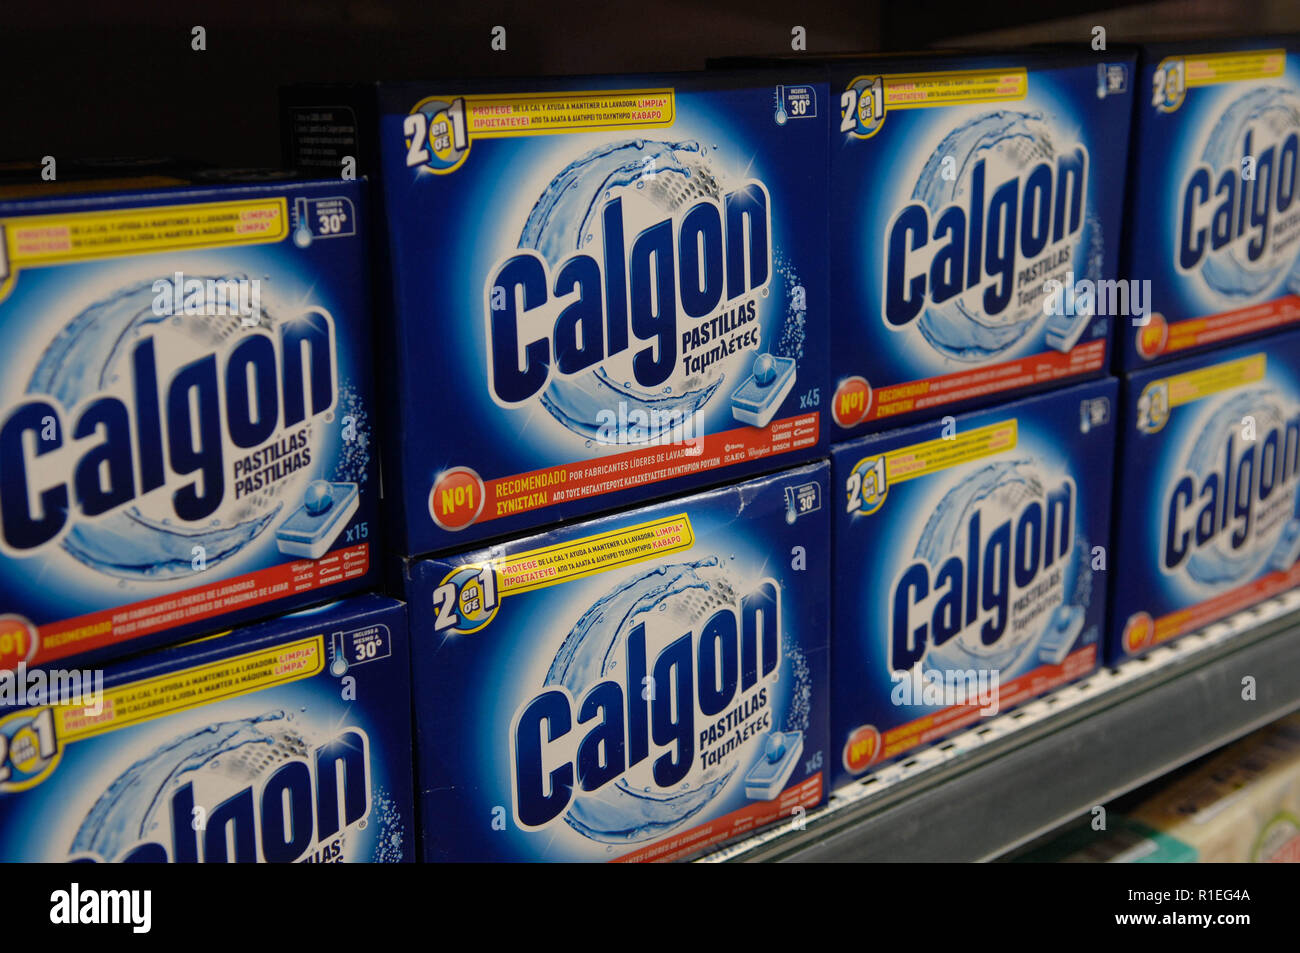 Calgon,detergente,Servicio de lavandería,lavadora Fotografía de